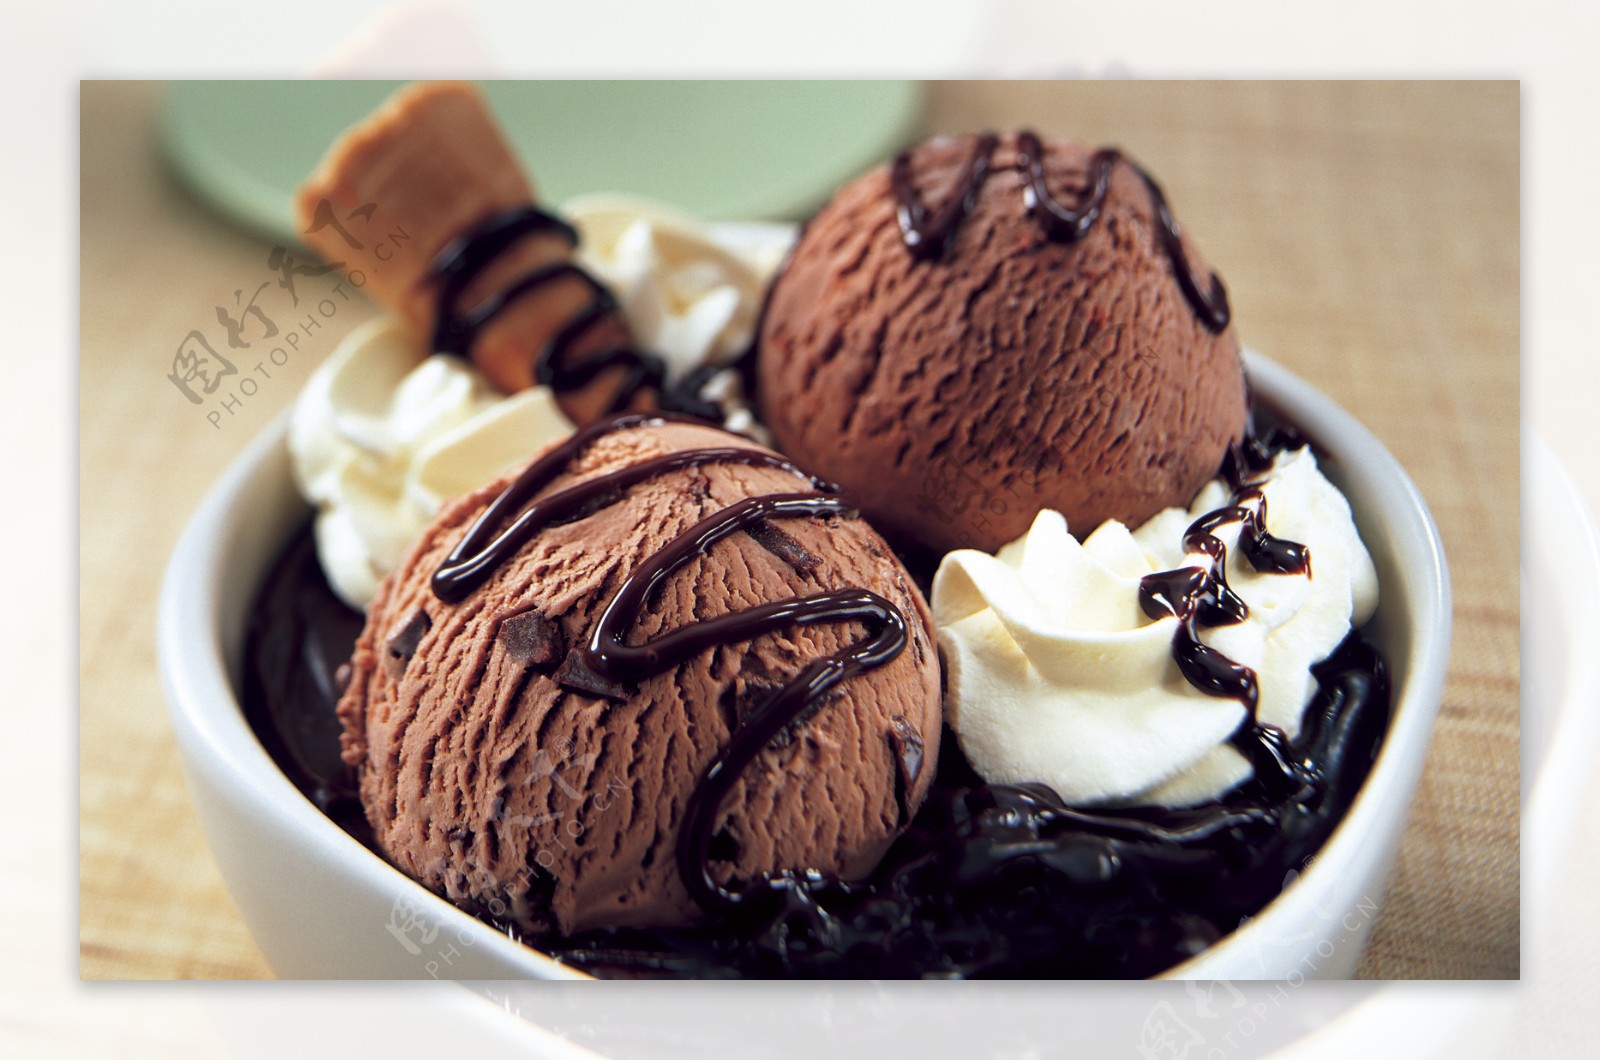 哈根达斯冰淇淋图片